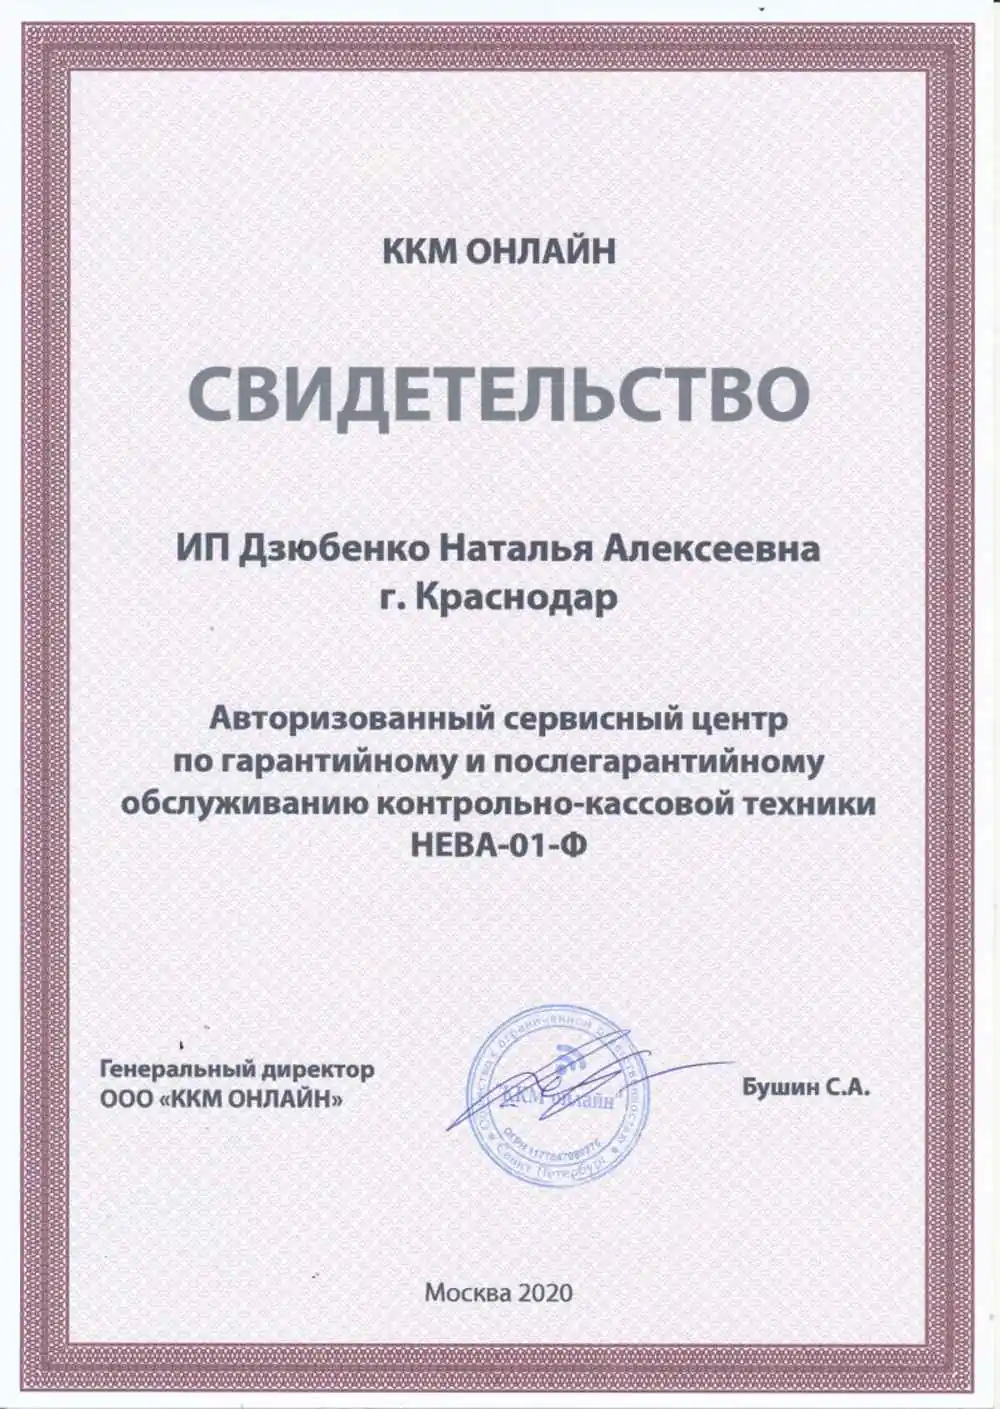 Сертификат ККМ Онлайн